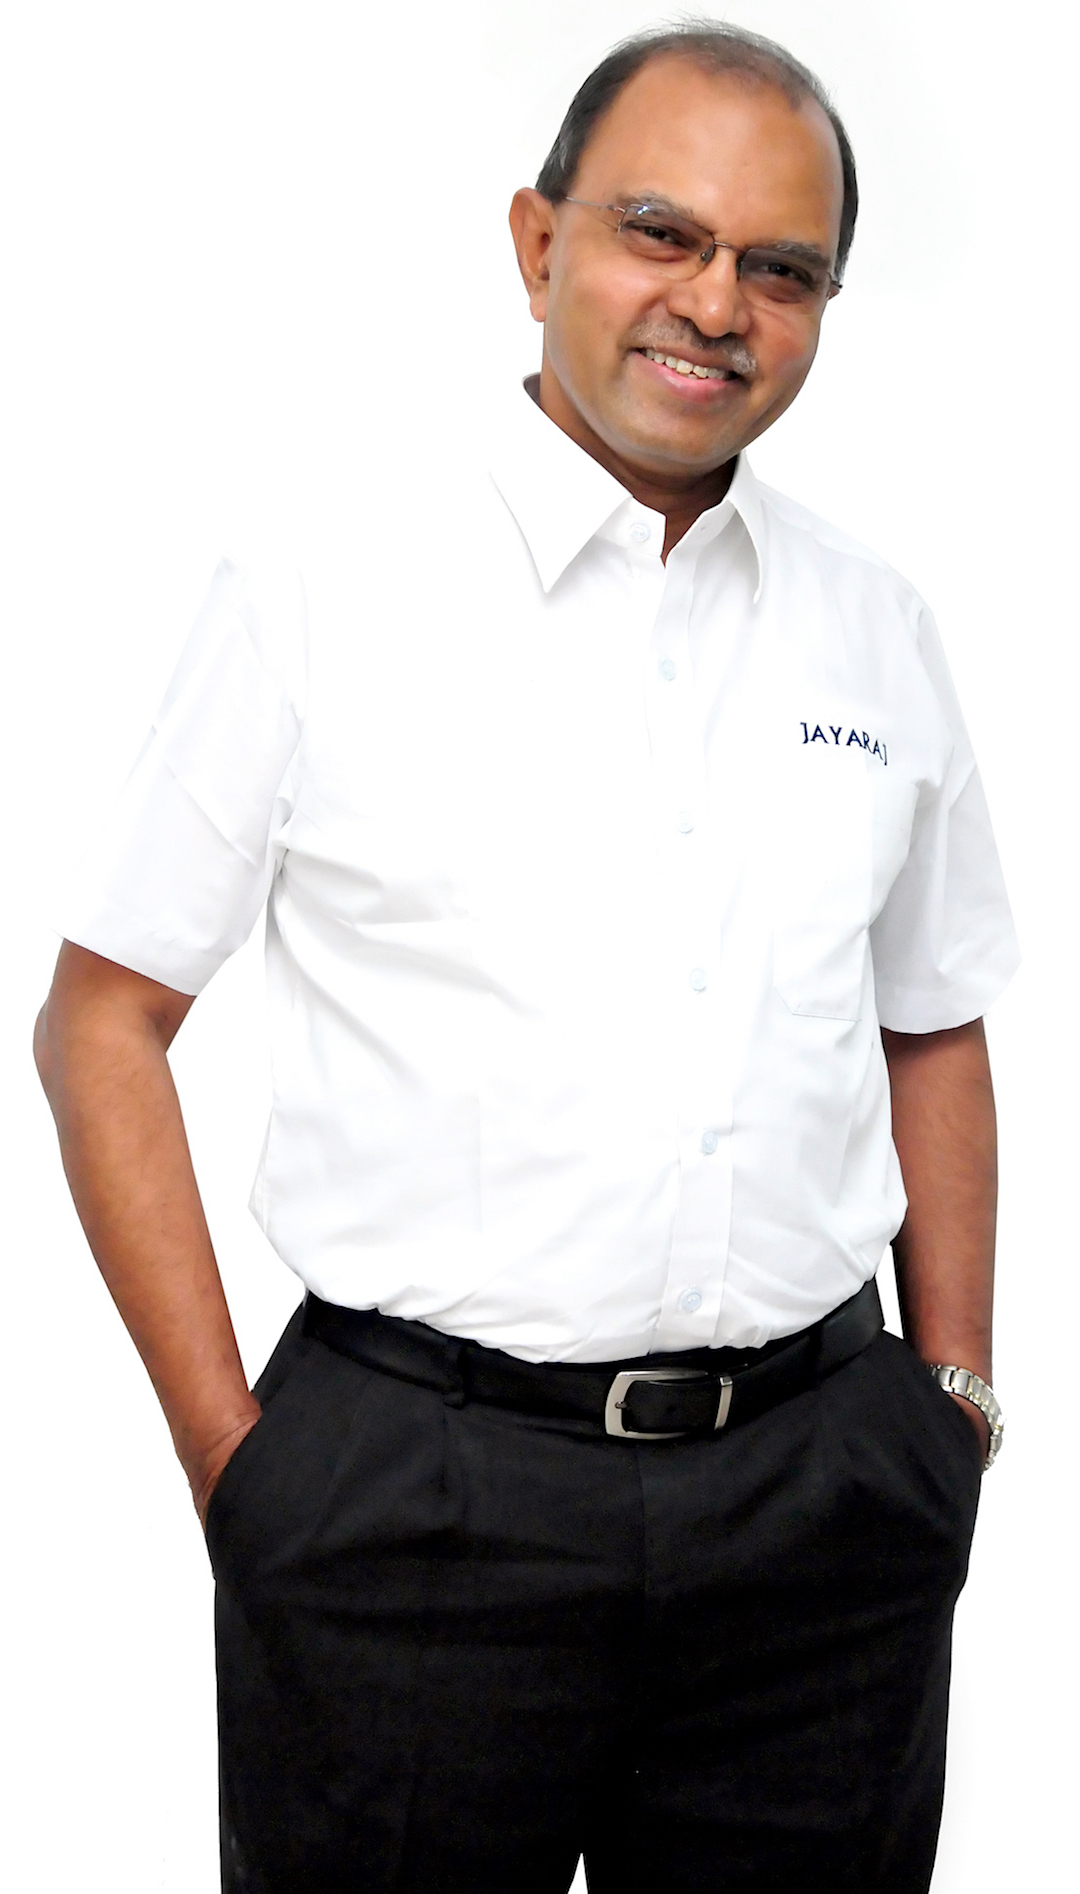 Mr Jeyasuresh Jayaraj